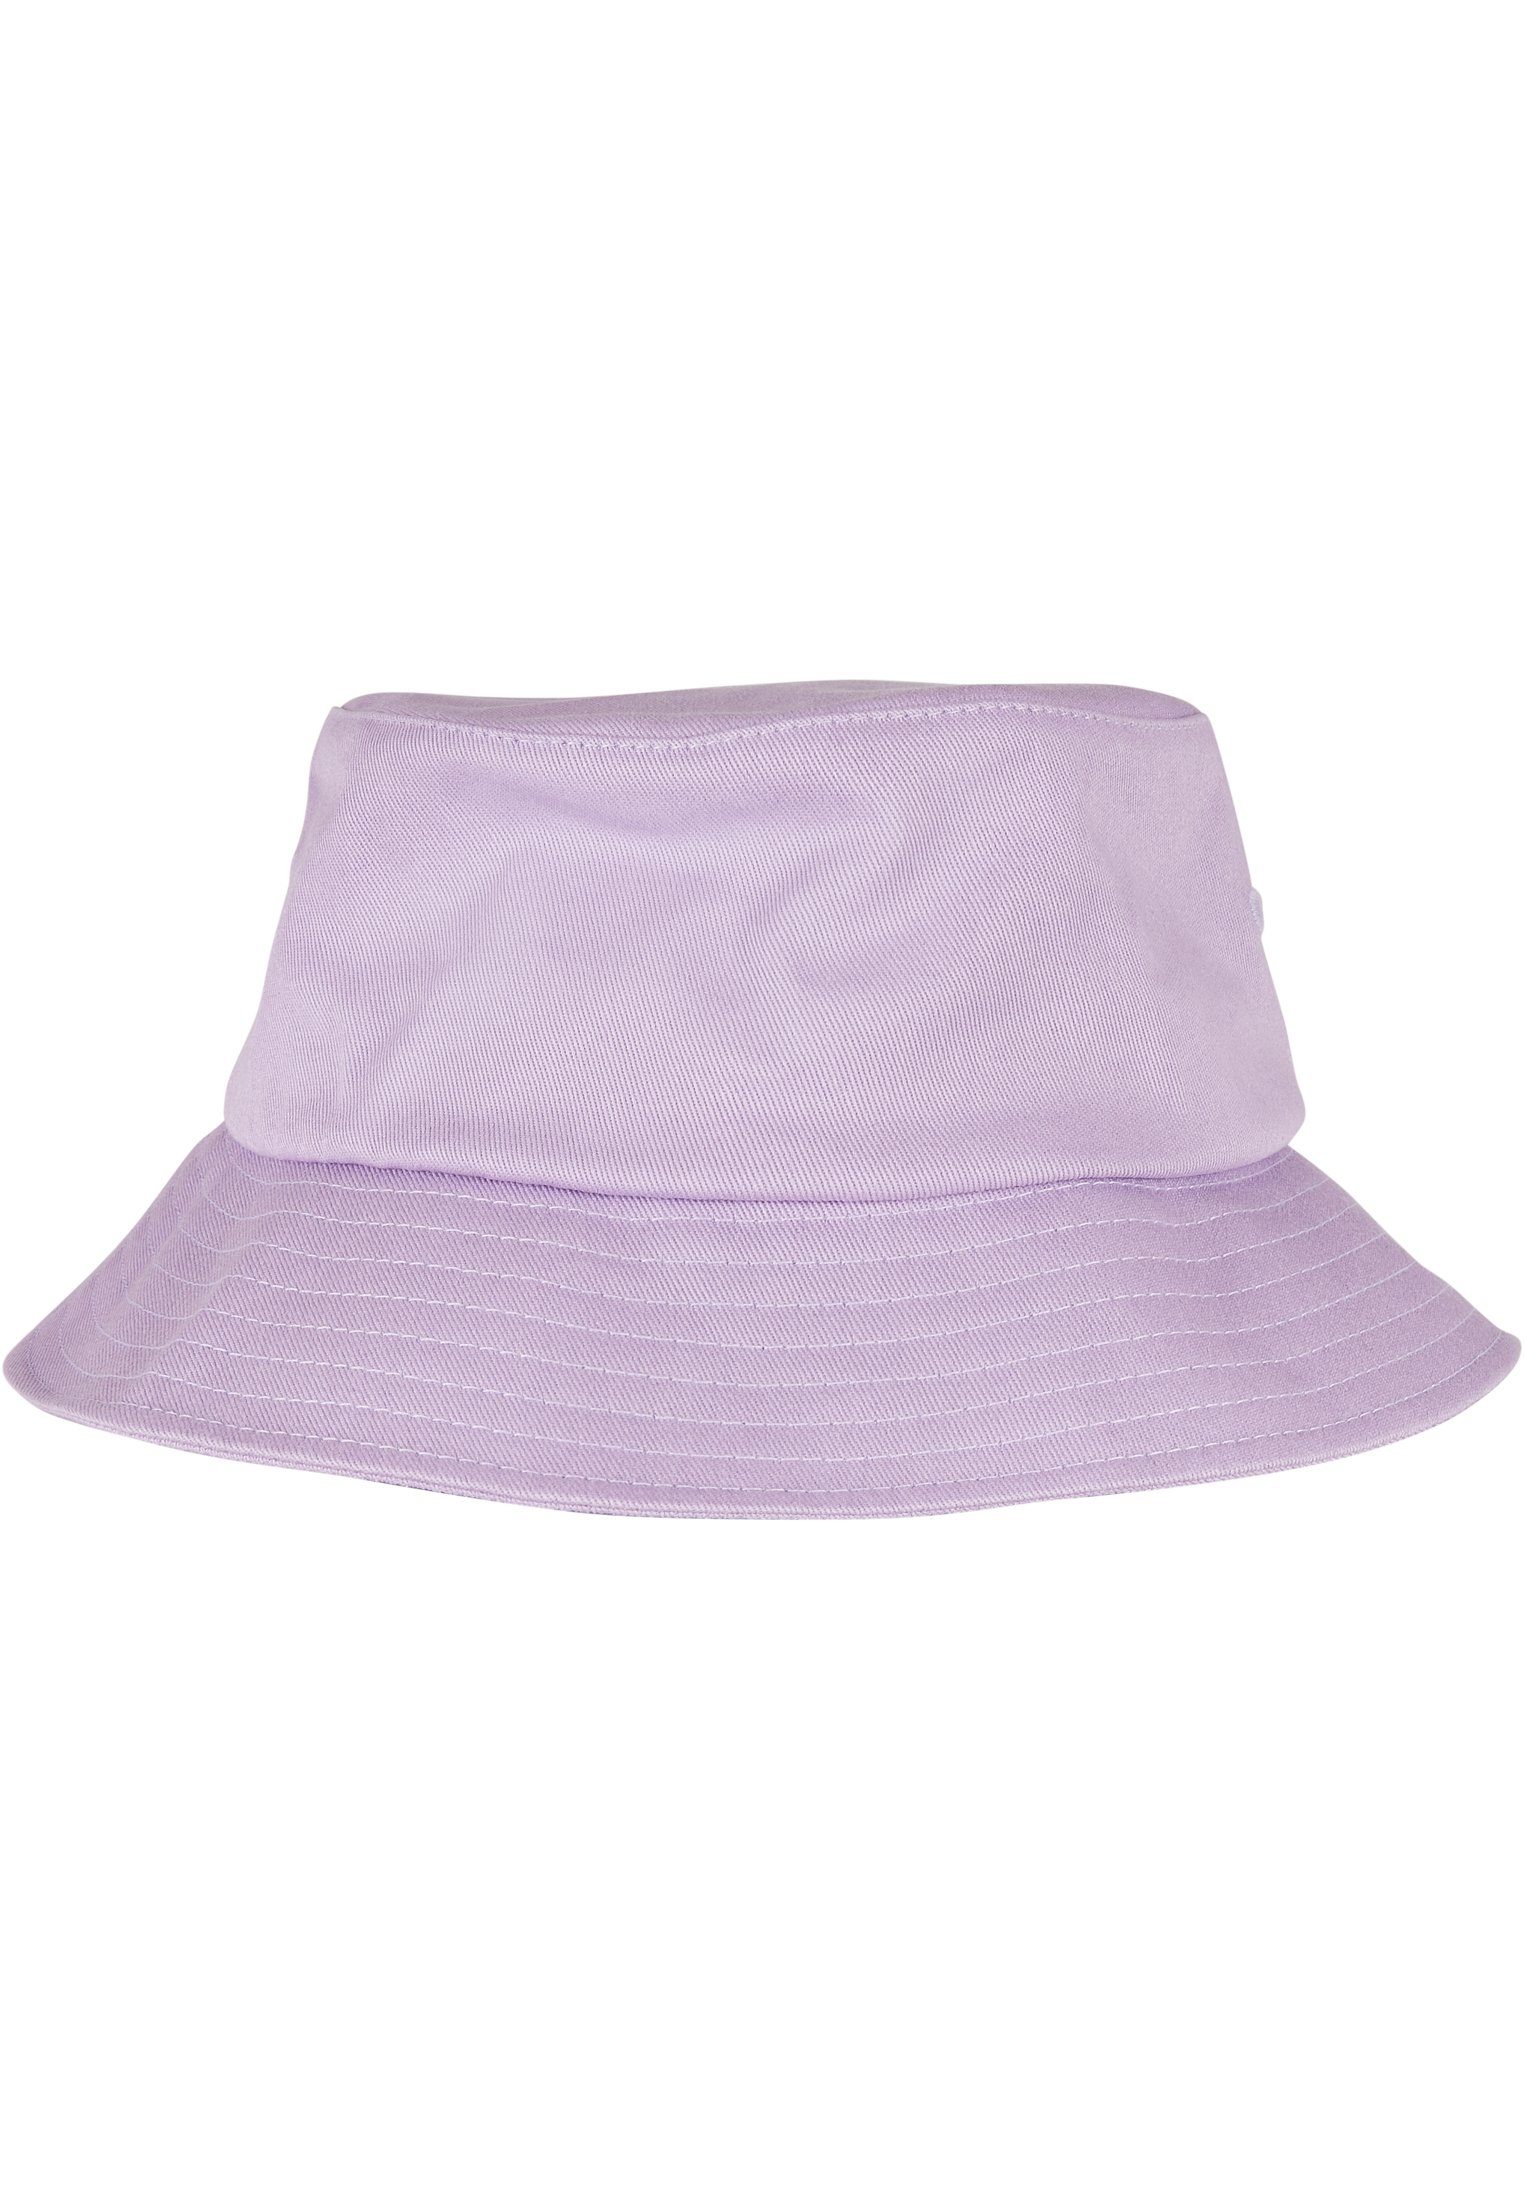 [Täglich zur Bestellung geöffnet] Cotton lilac Flexfit Hat Cap Flexfit Bucket Twill Accessoires Flex